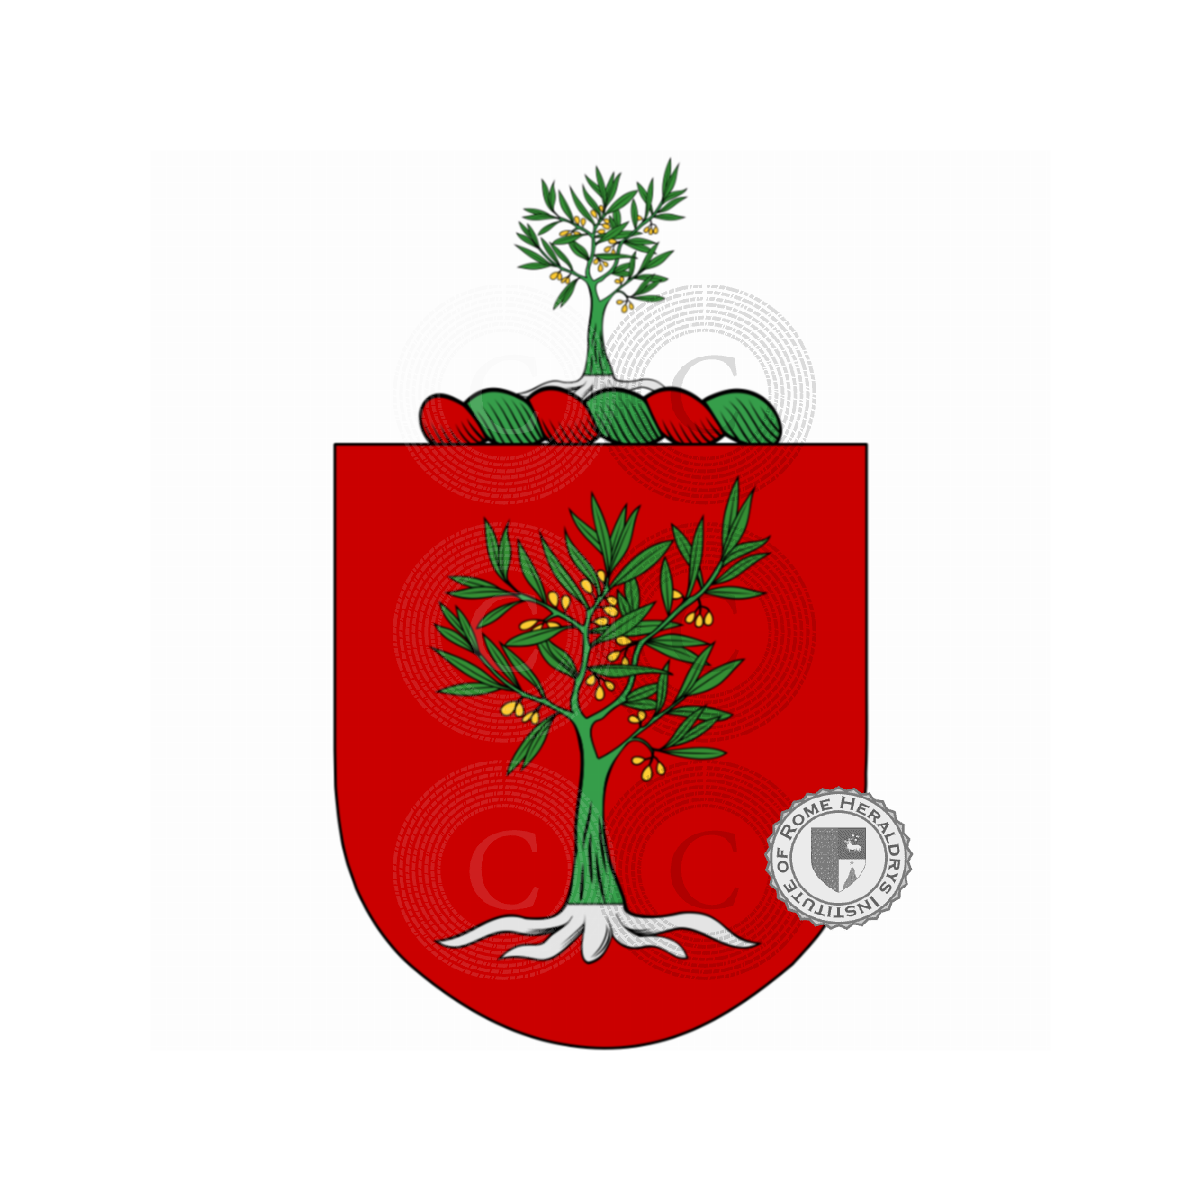 Wappen der FamilieOliveira, d'Oliveira,de Oliveiras,Olival,Oliveiras